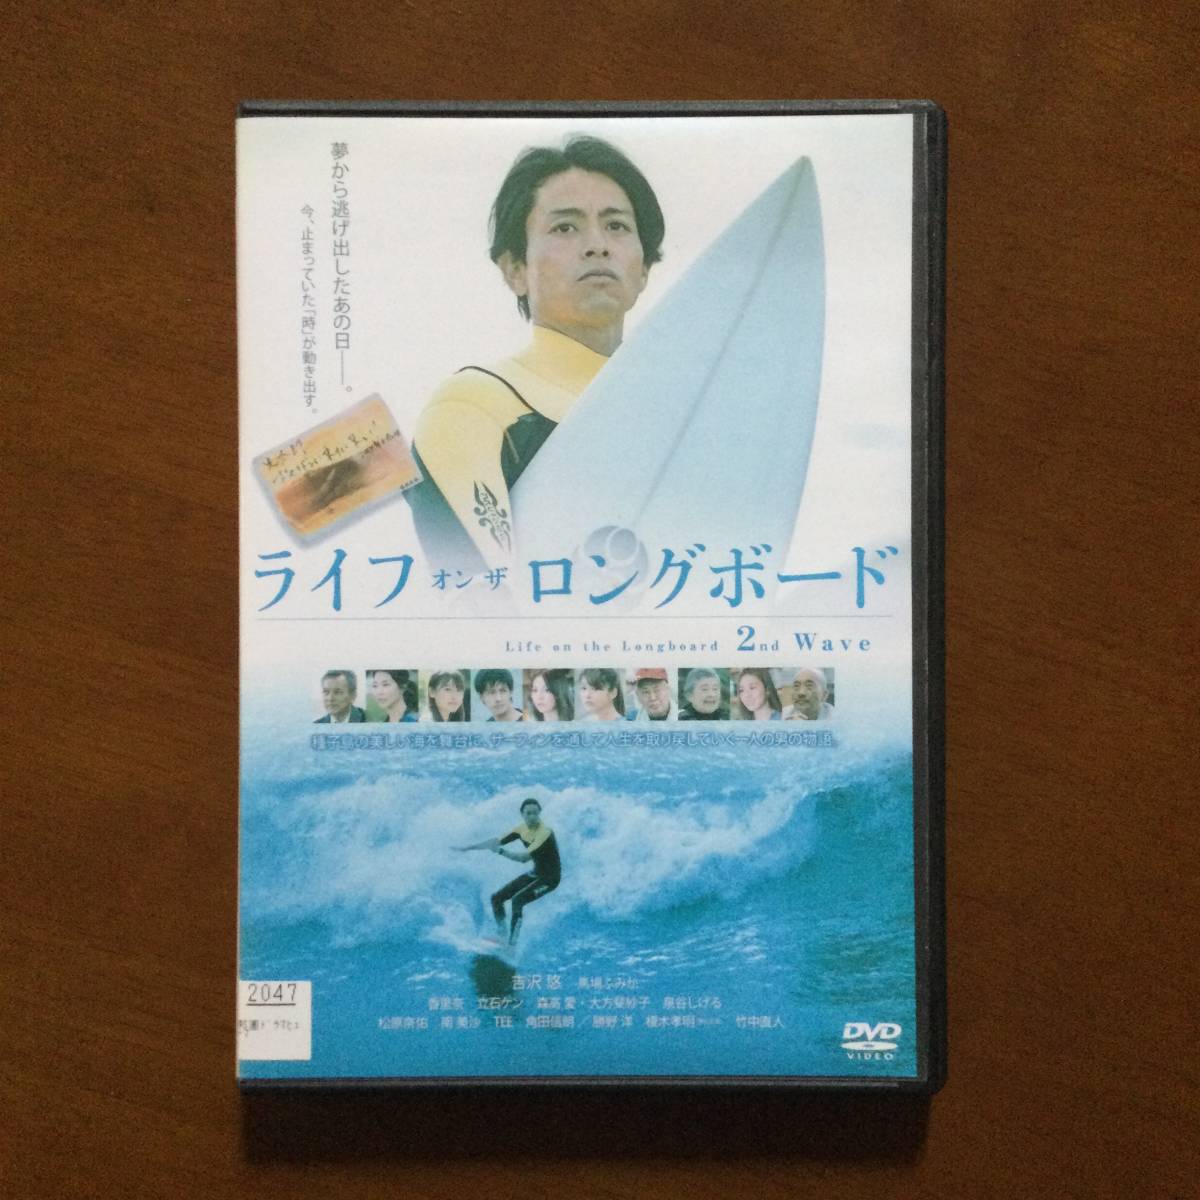 最新情報 ライフ オン ザ ロングボード 2nd Wave DVD